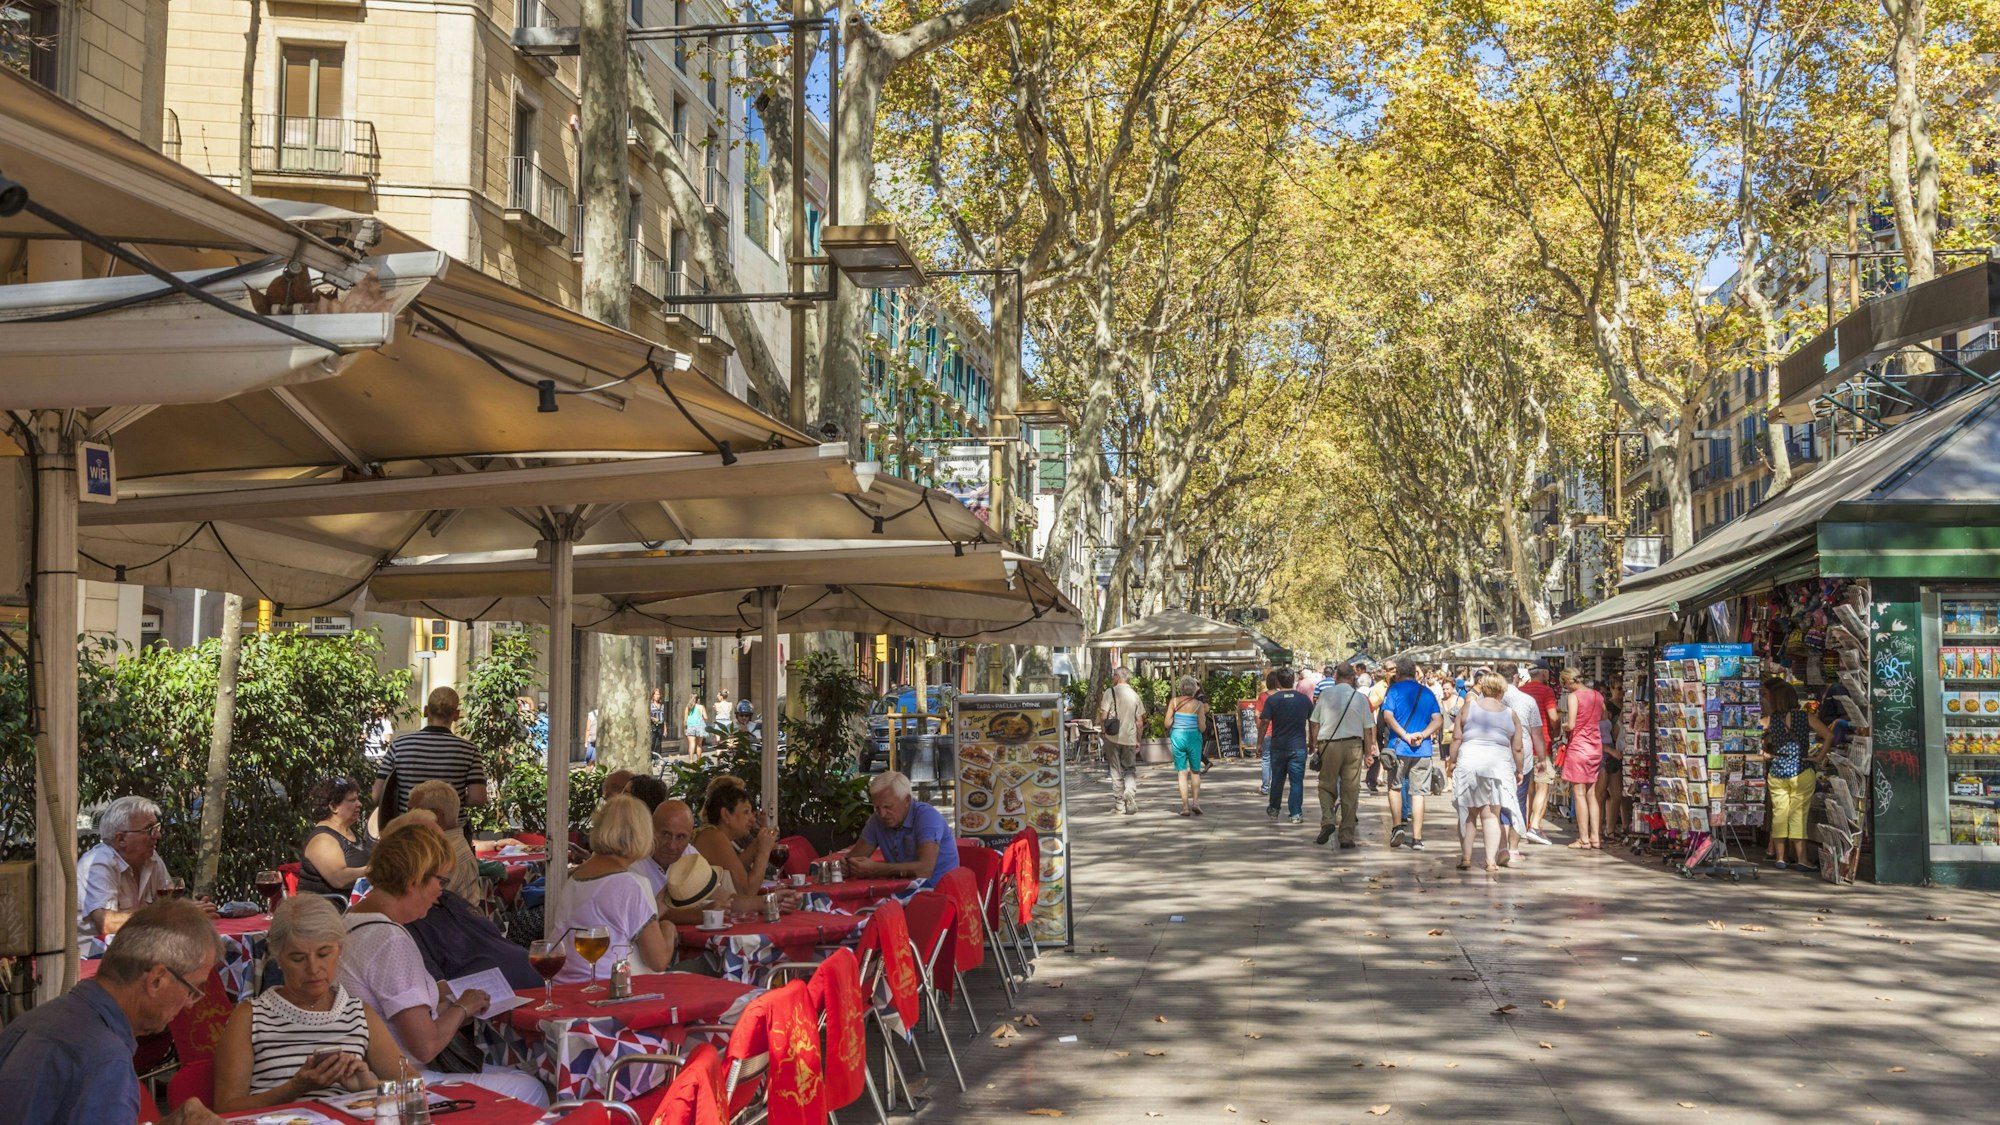 Blick auf die Ramblas in Barcelona, wo es einheitliche Schirme und hohe Bäume gibt.